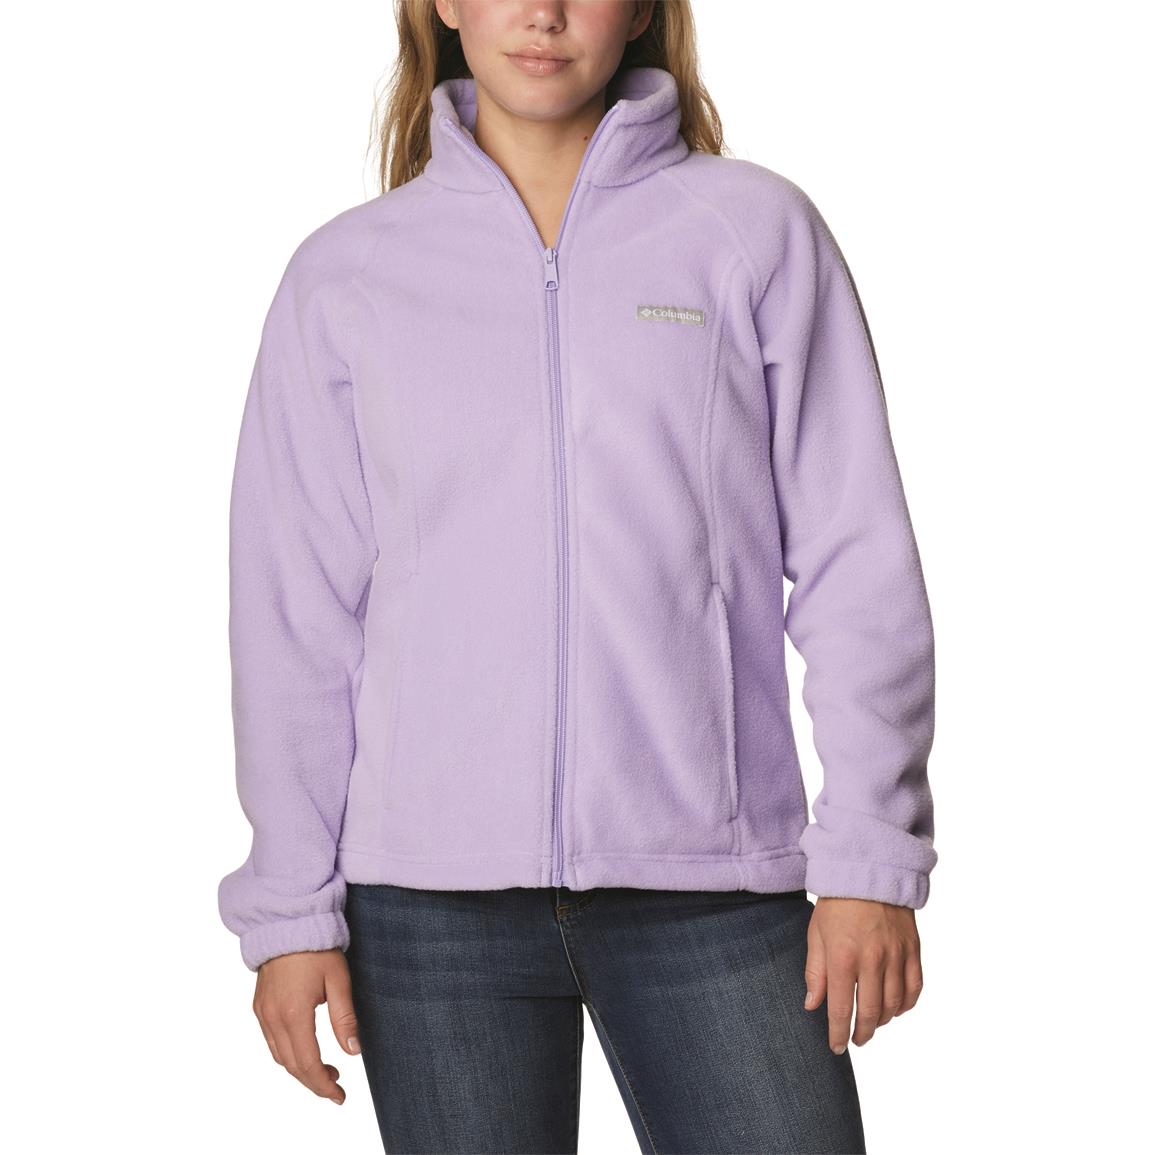 Columbia Women's Benton Springs Full Zip Fleece, Frosted Purple